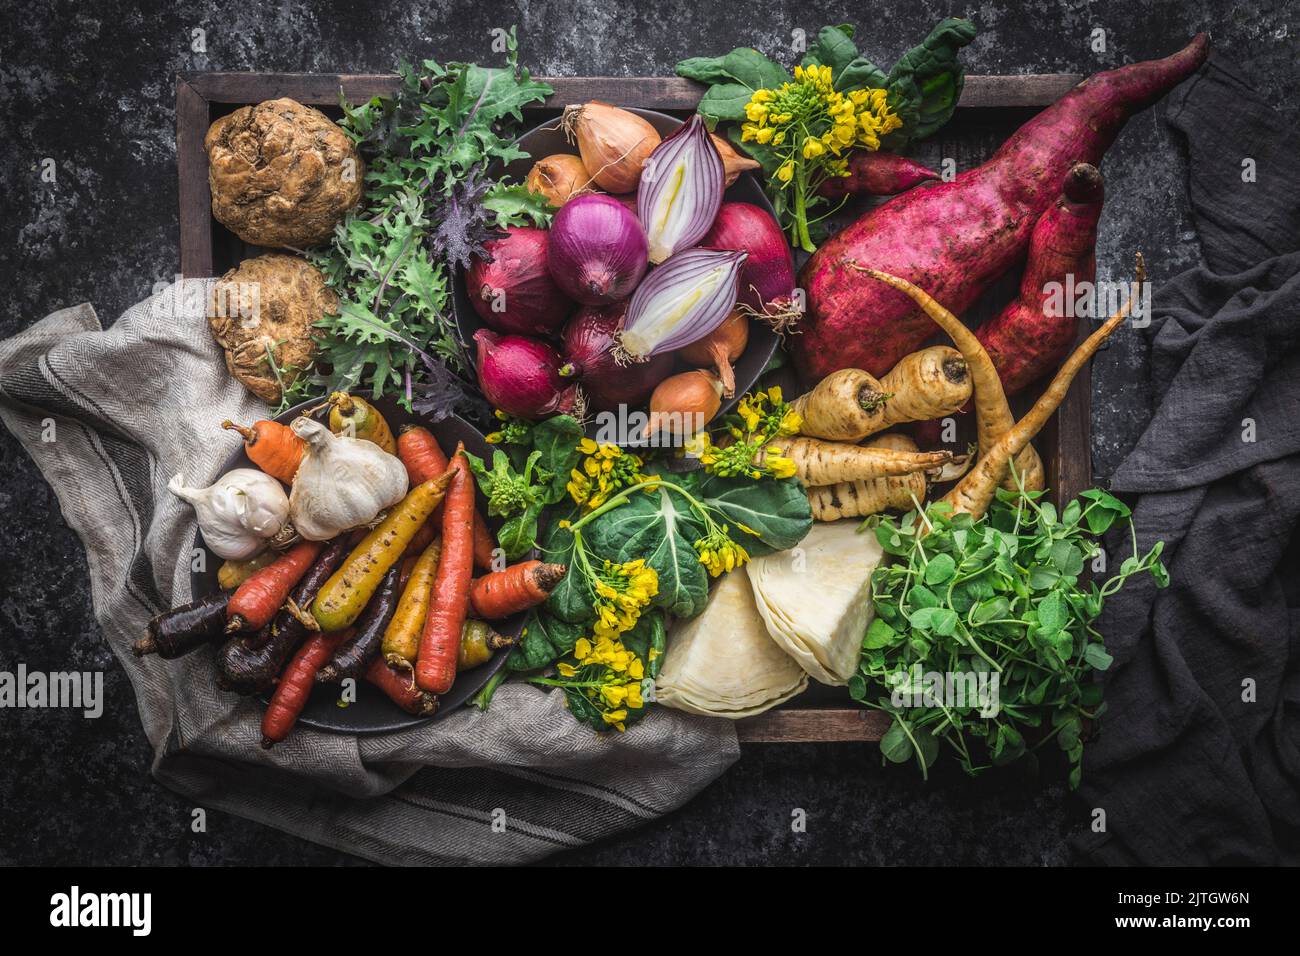 Scatola di legno traboccante di verdure fresche della fattoria, con tovagliolo rustico Foto Stock